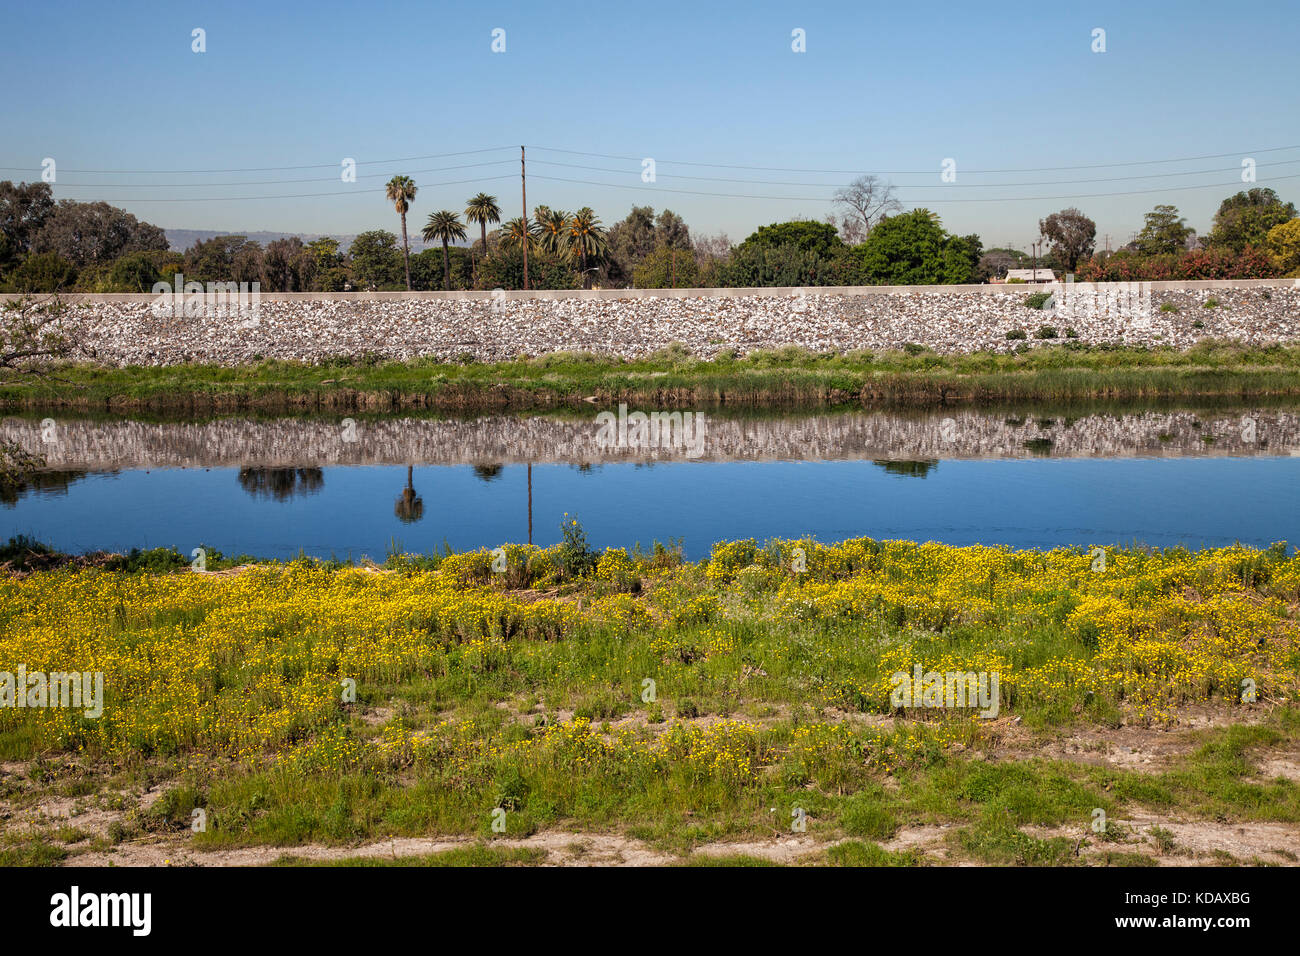 Los angeles river près de Willow Street, Long Beach, Californie, USA Banque D'Images